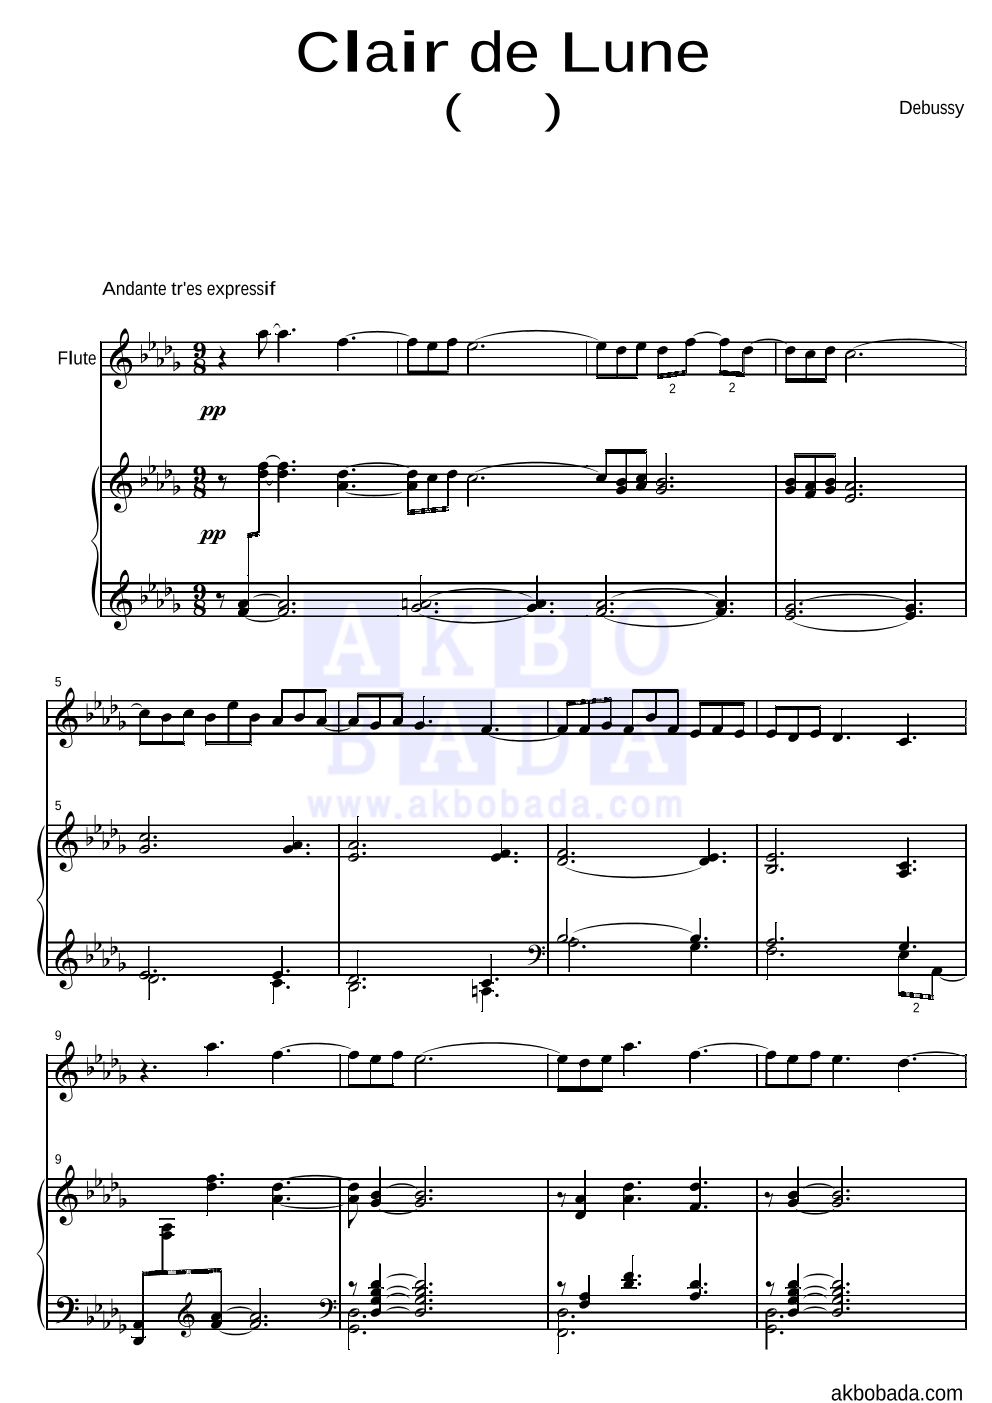 드뷔시 - Clair de Lune(달빛) 플룻&피아노 악보 